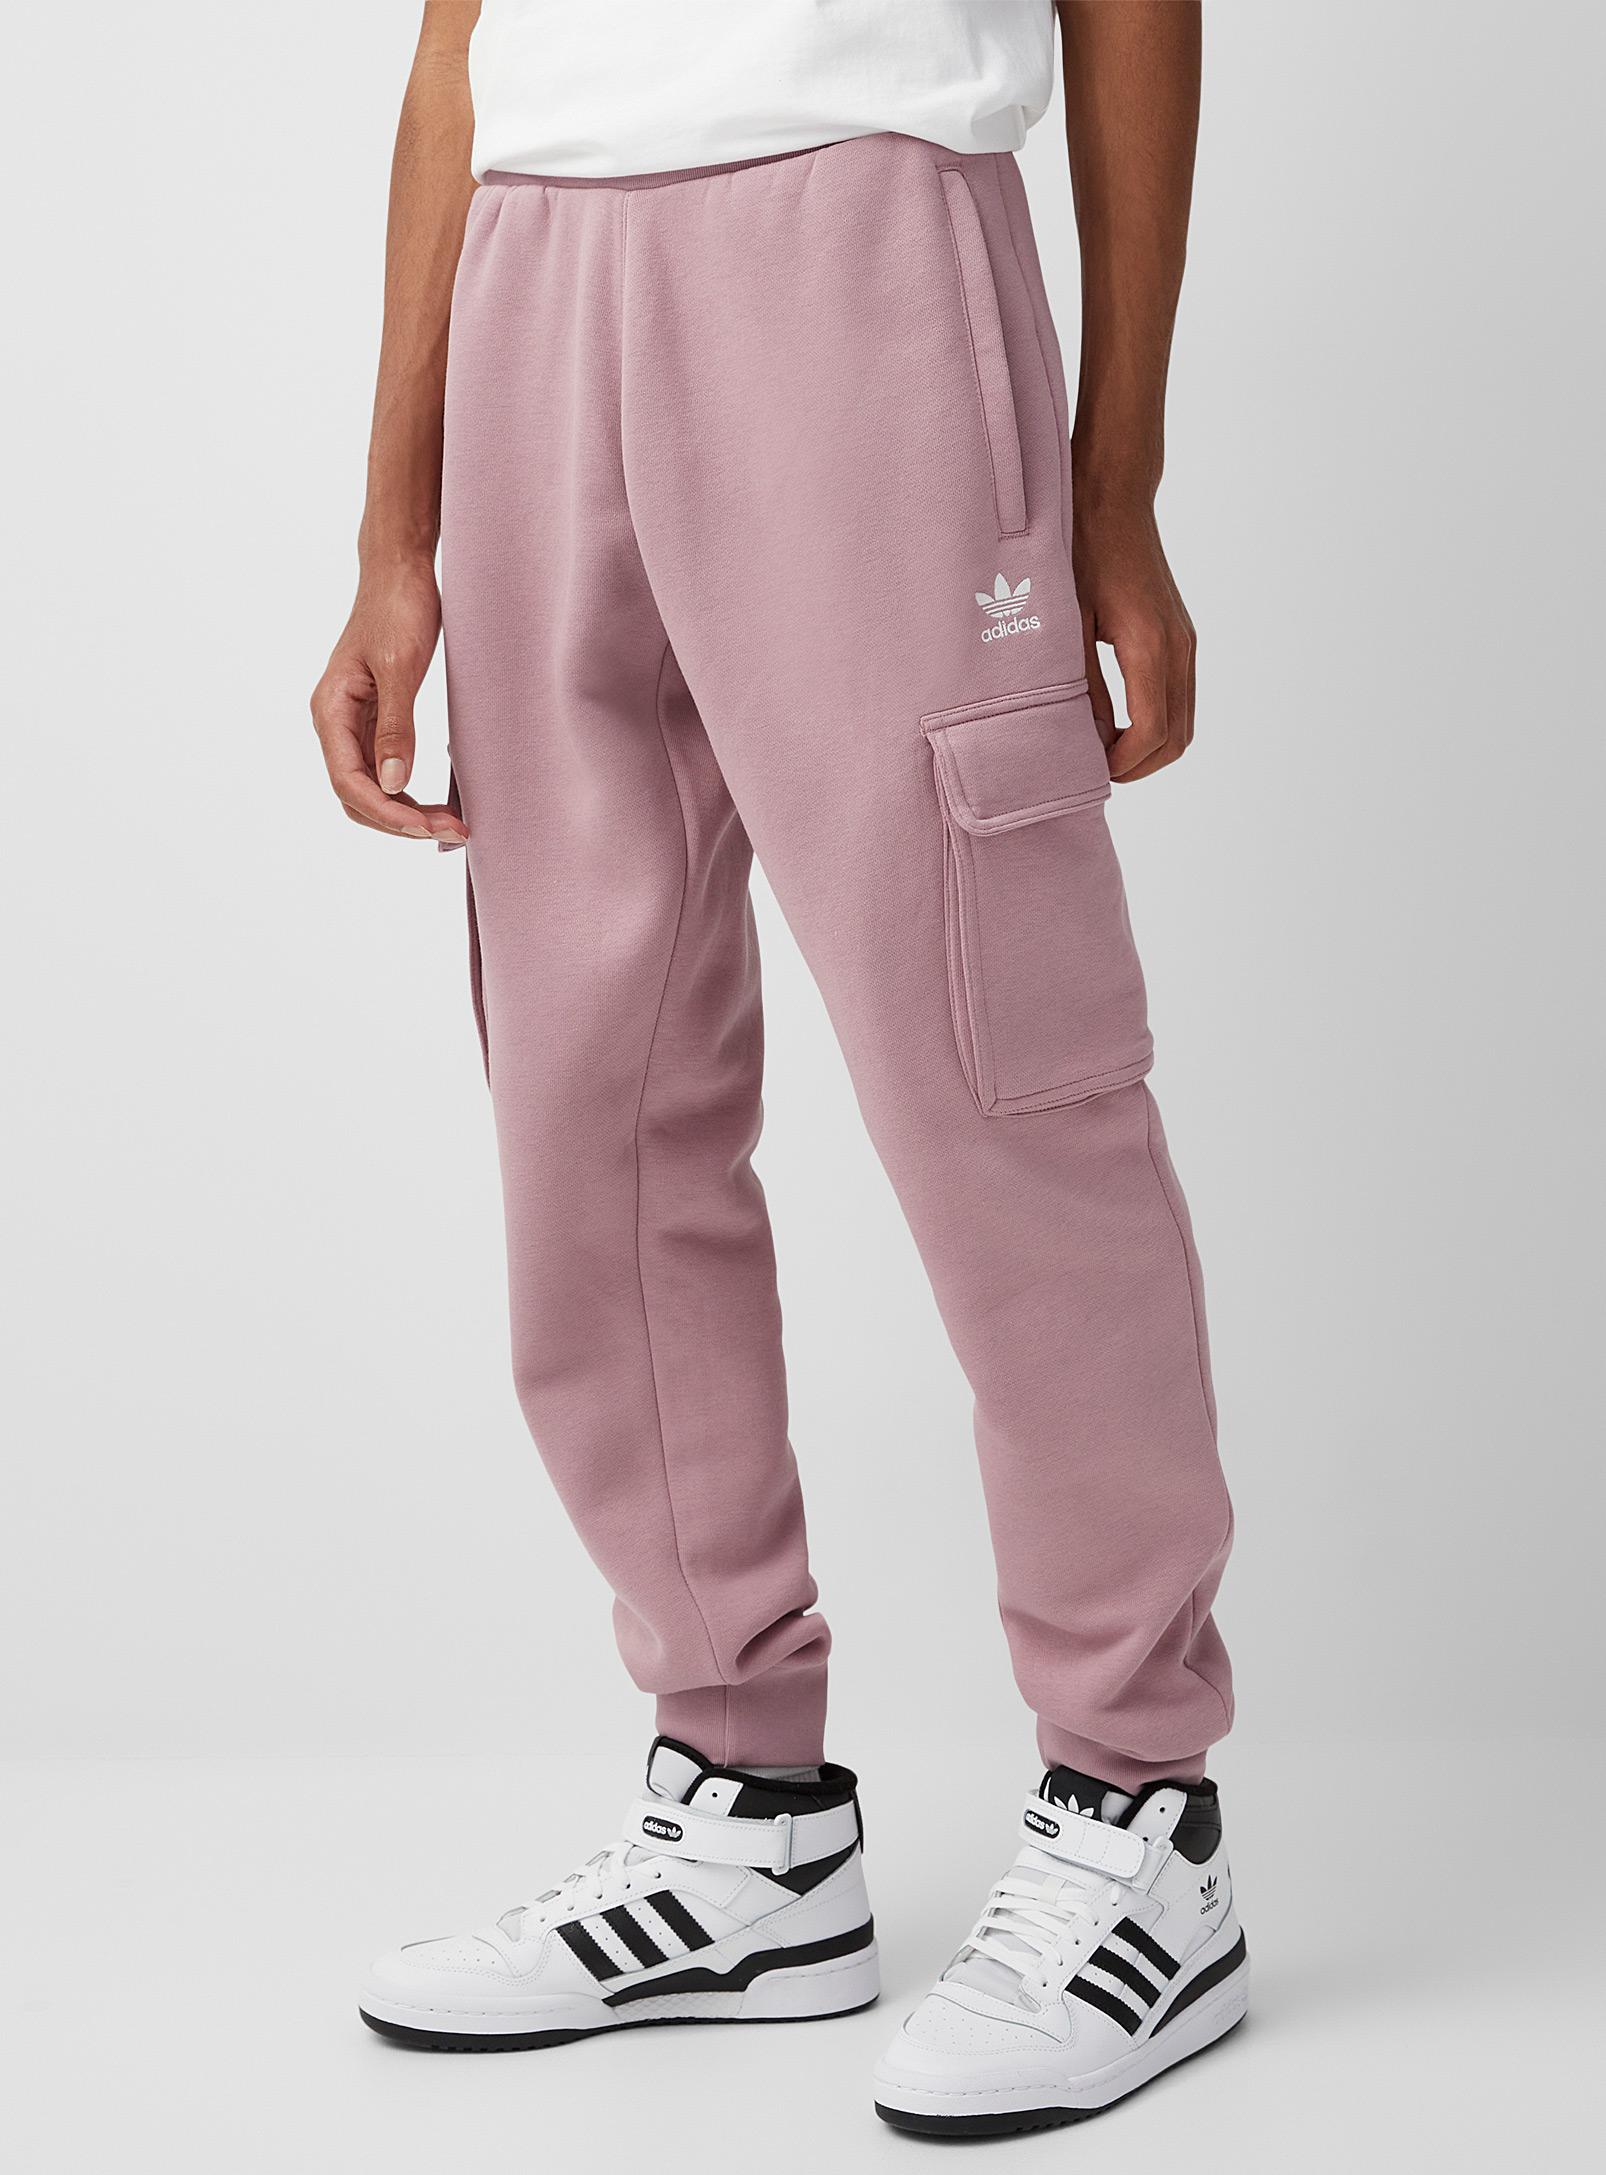 verstoring bekennen moeilijk adidas Originals Fleece Cargo joggers Tapered Slim Fit in Pink for Men |  Lyst